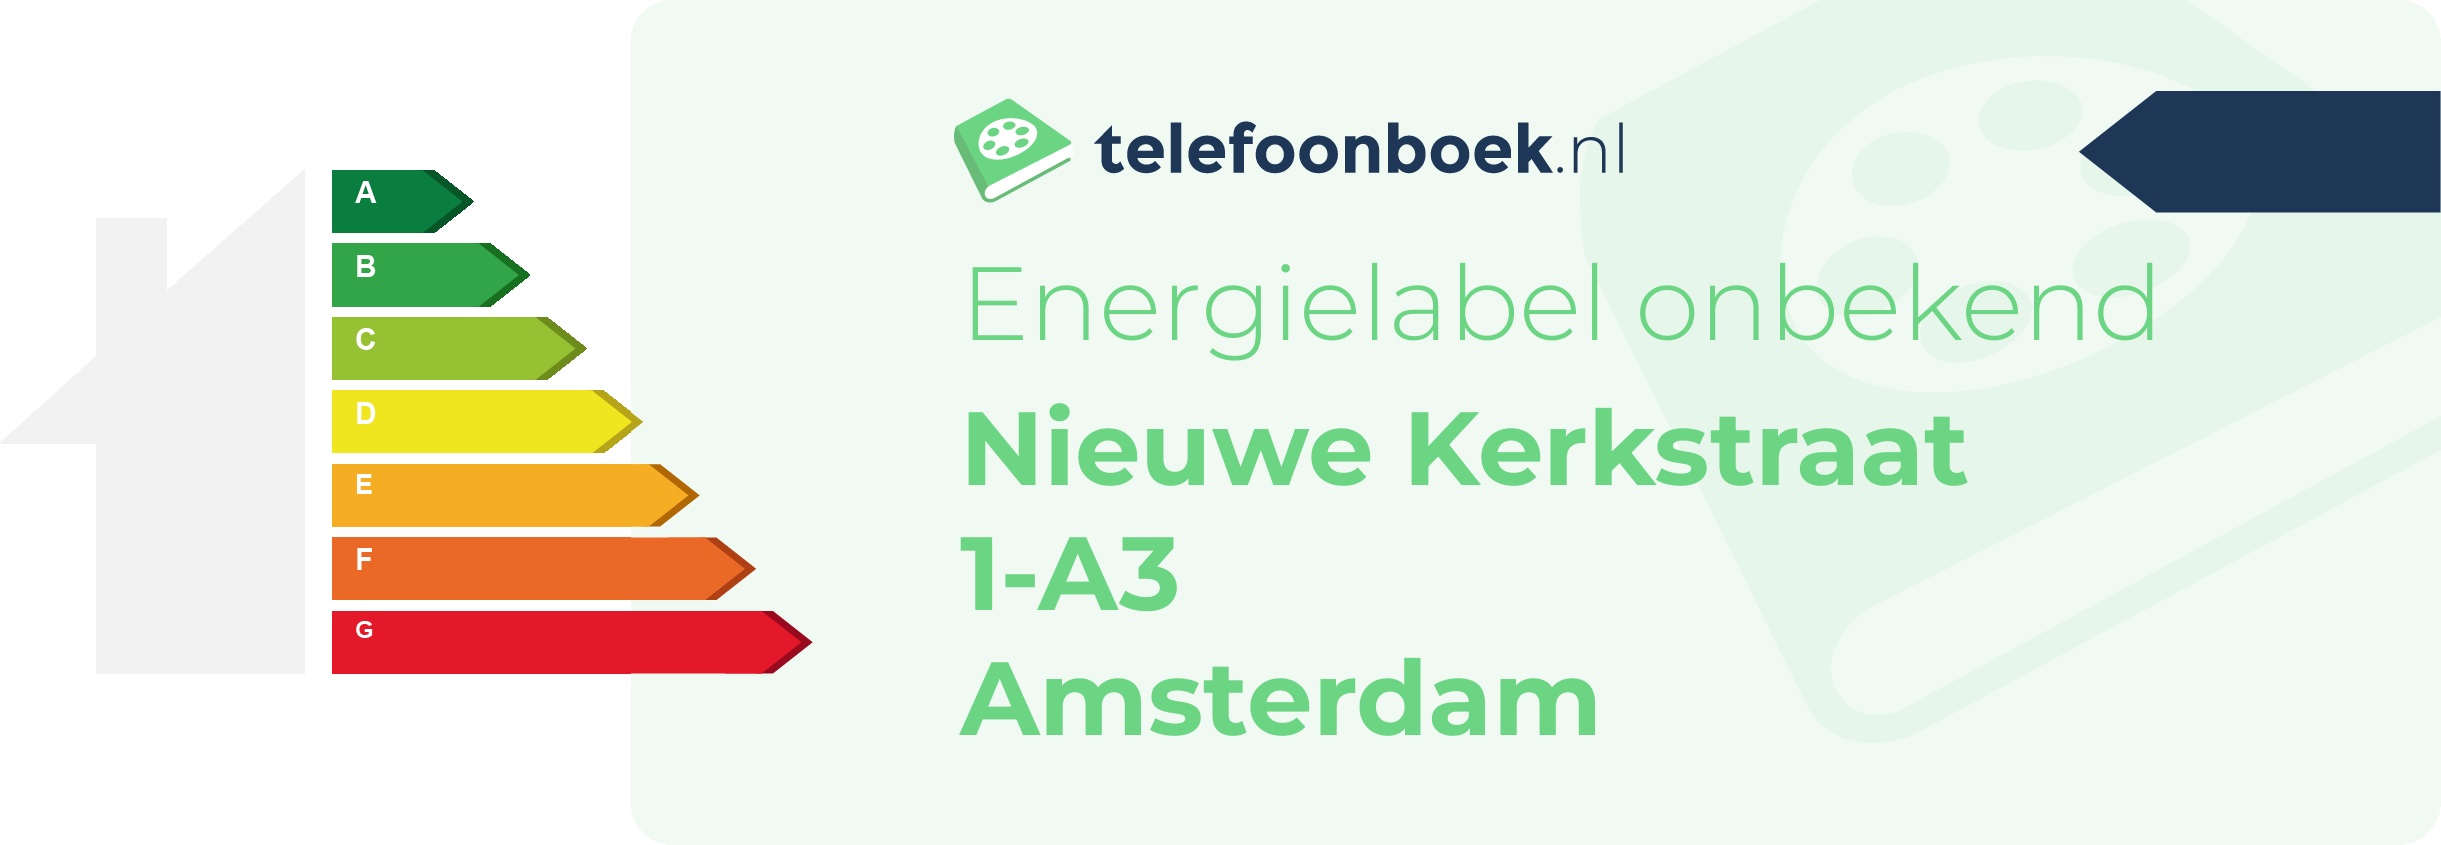 Energielabel Nieuwe Kerkstraat 1-A3 Amsterdam